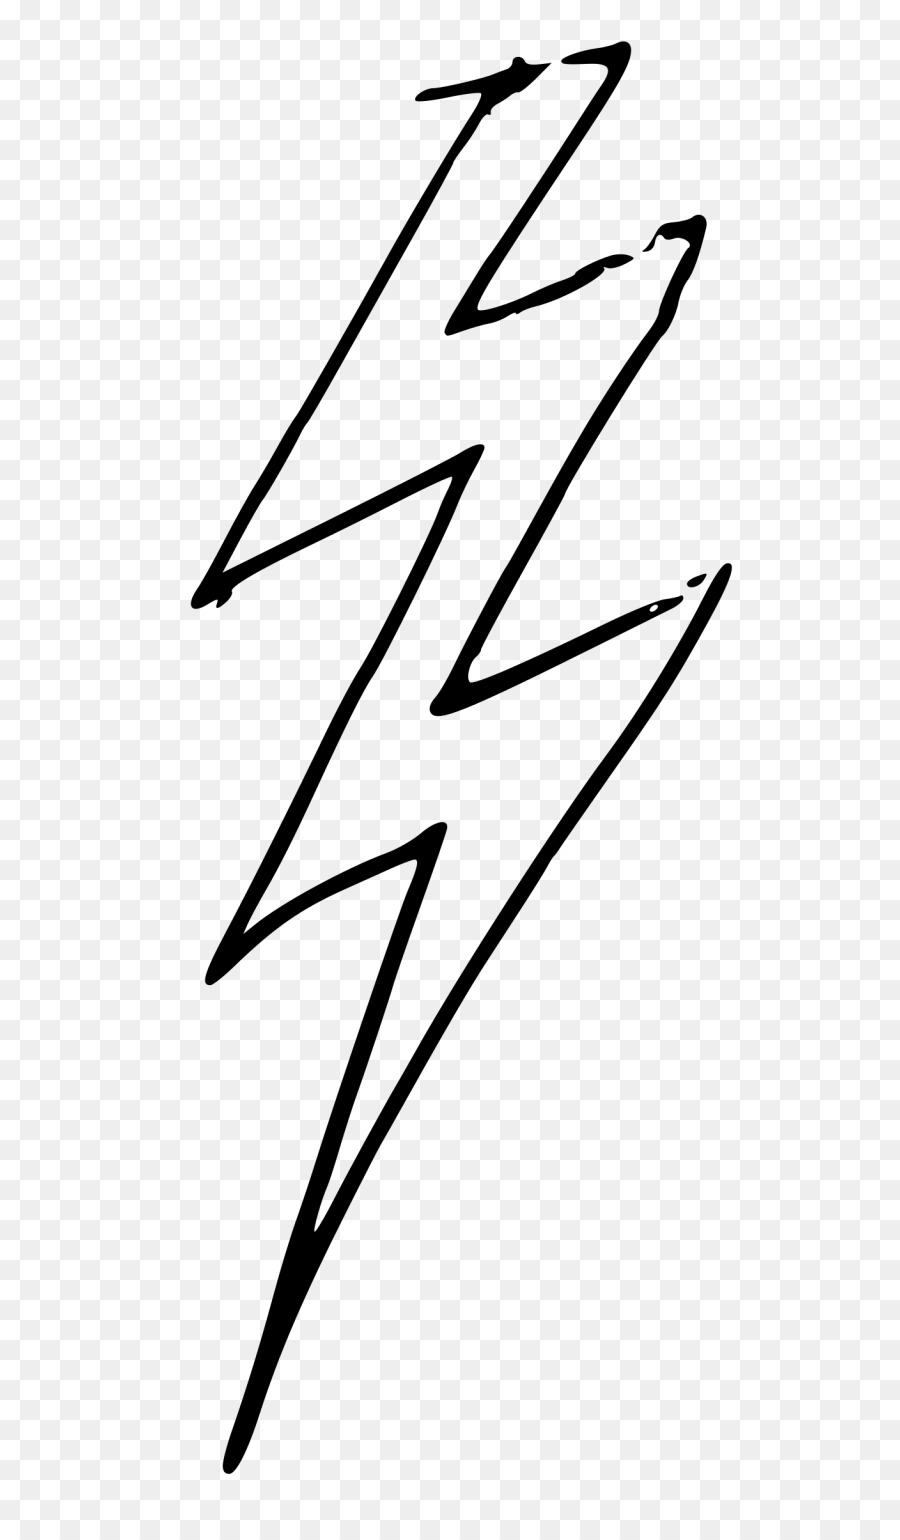 Lightning Bolt Lightning strike Clip art - lightning png download - 700*1534 - Free Transparent Lightning png Download.